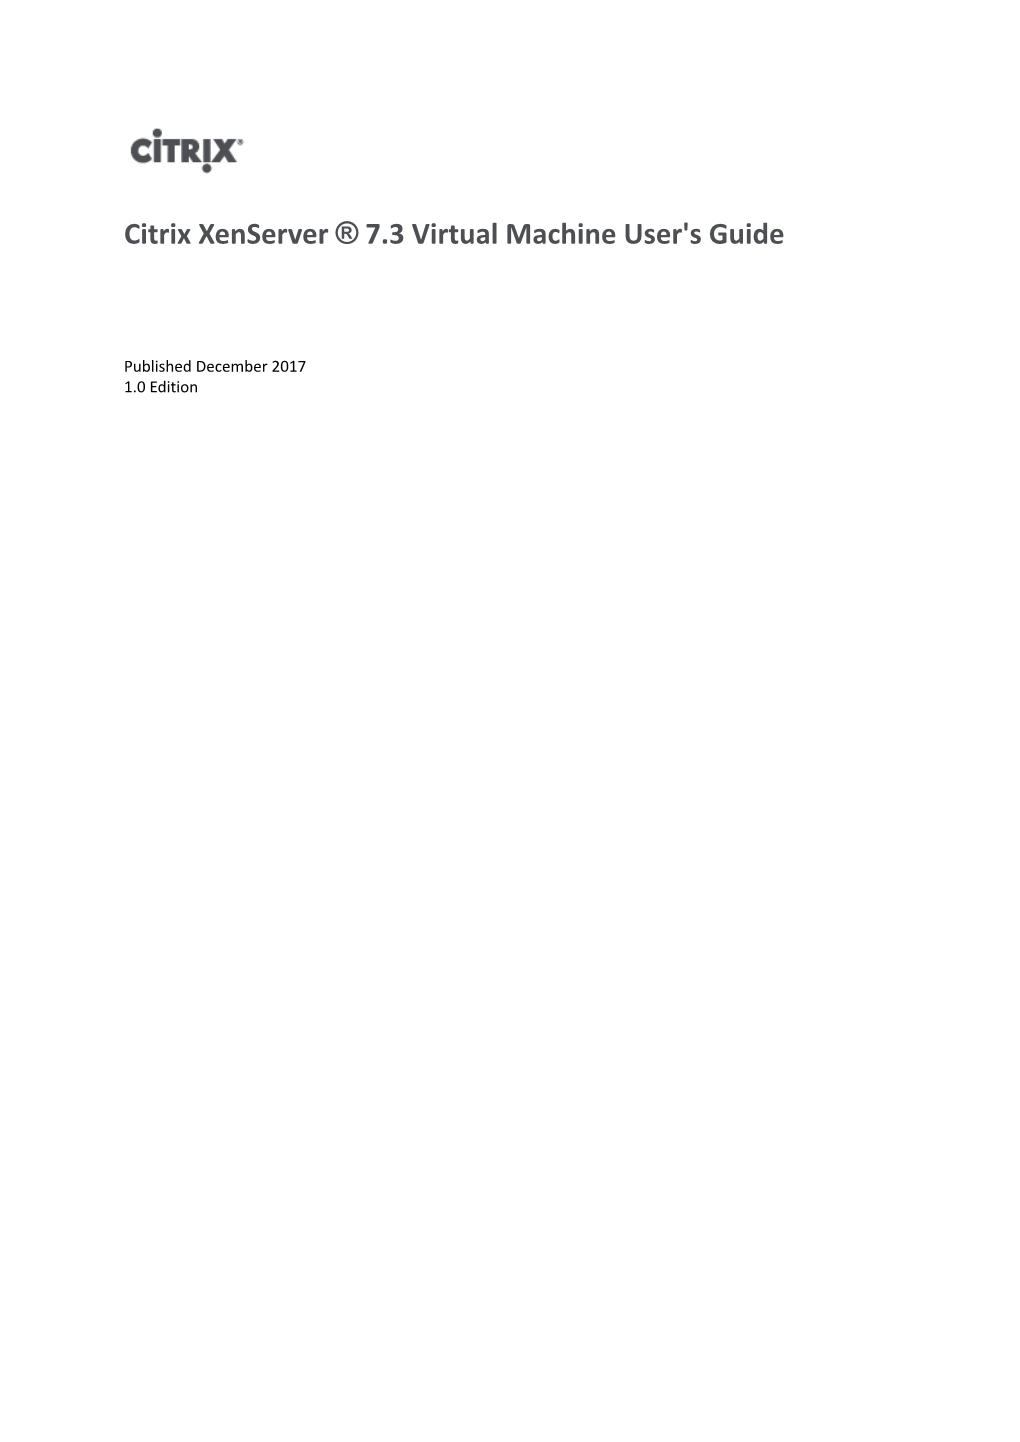 Citrix Xenserver ® 7.3 VM User's Guide